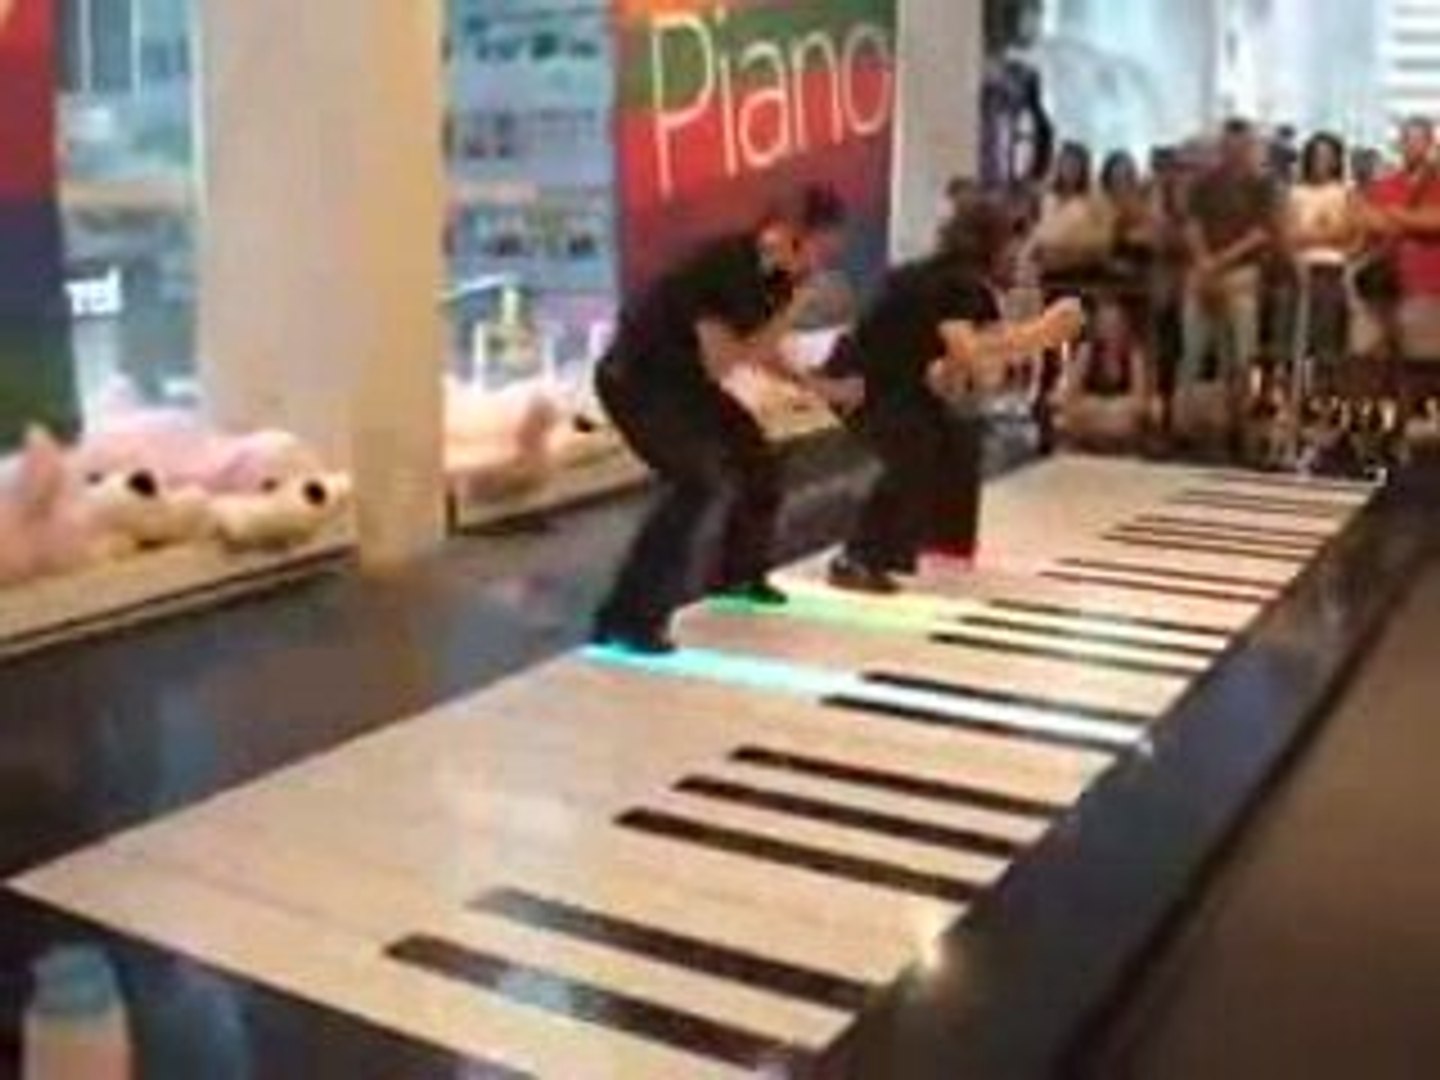 Comment jouer du piano avec les pieds !! - Vidéo Dailymotion